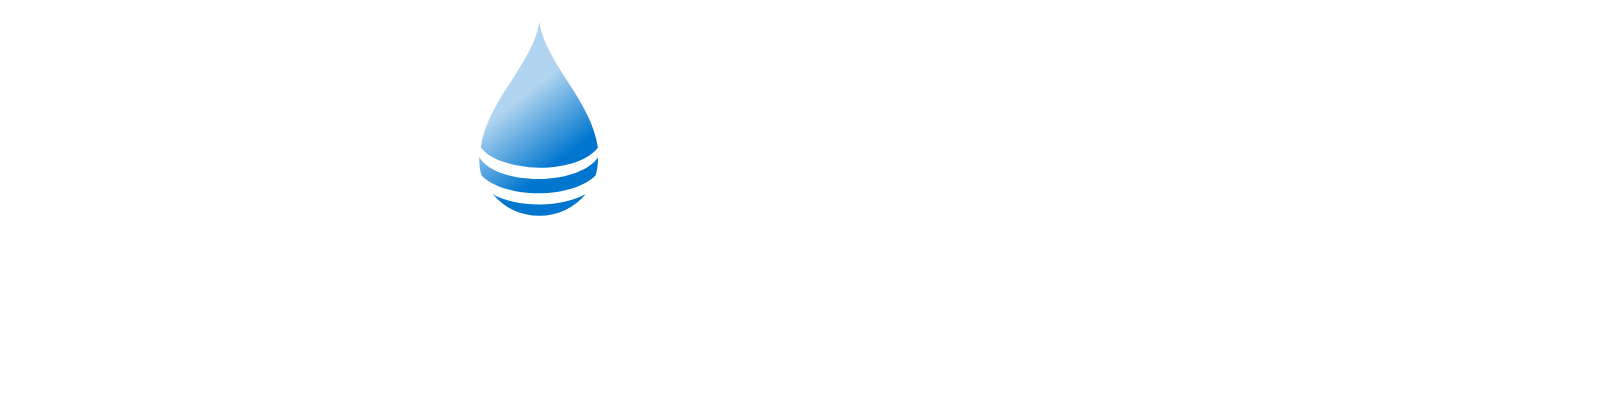 PROCEPT BioRobotics logo large for dark backgrounds (transparent PNG)